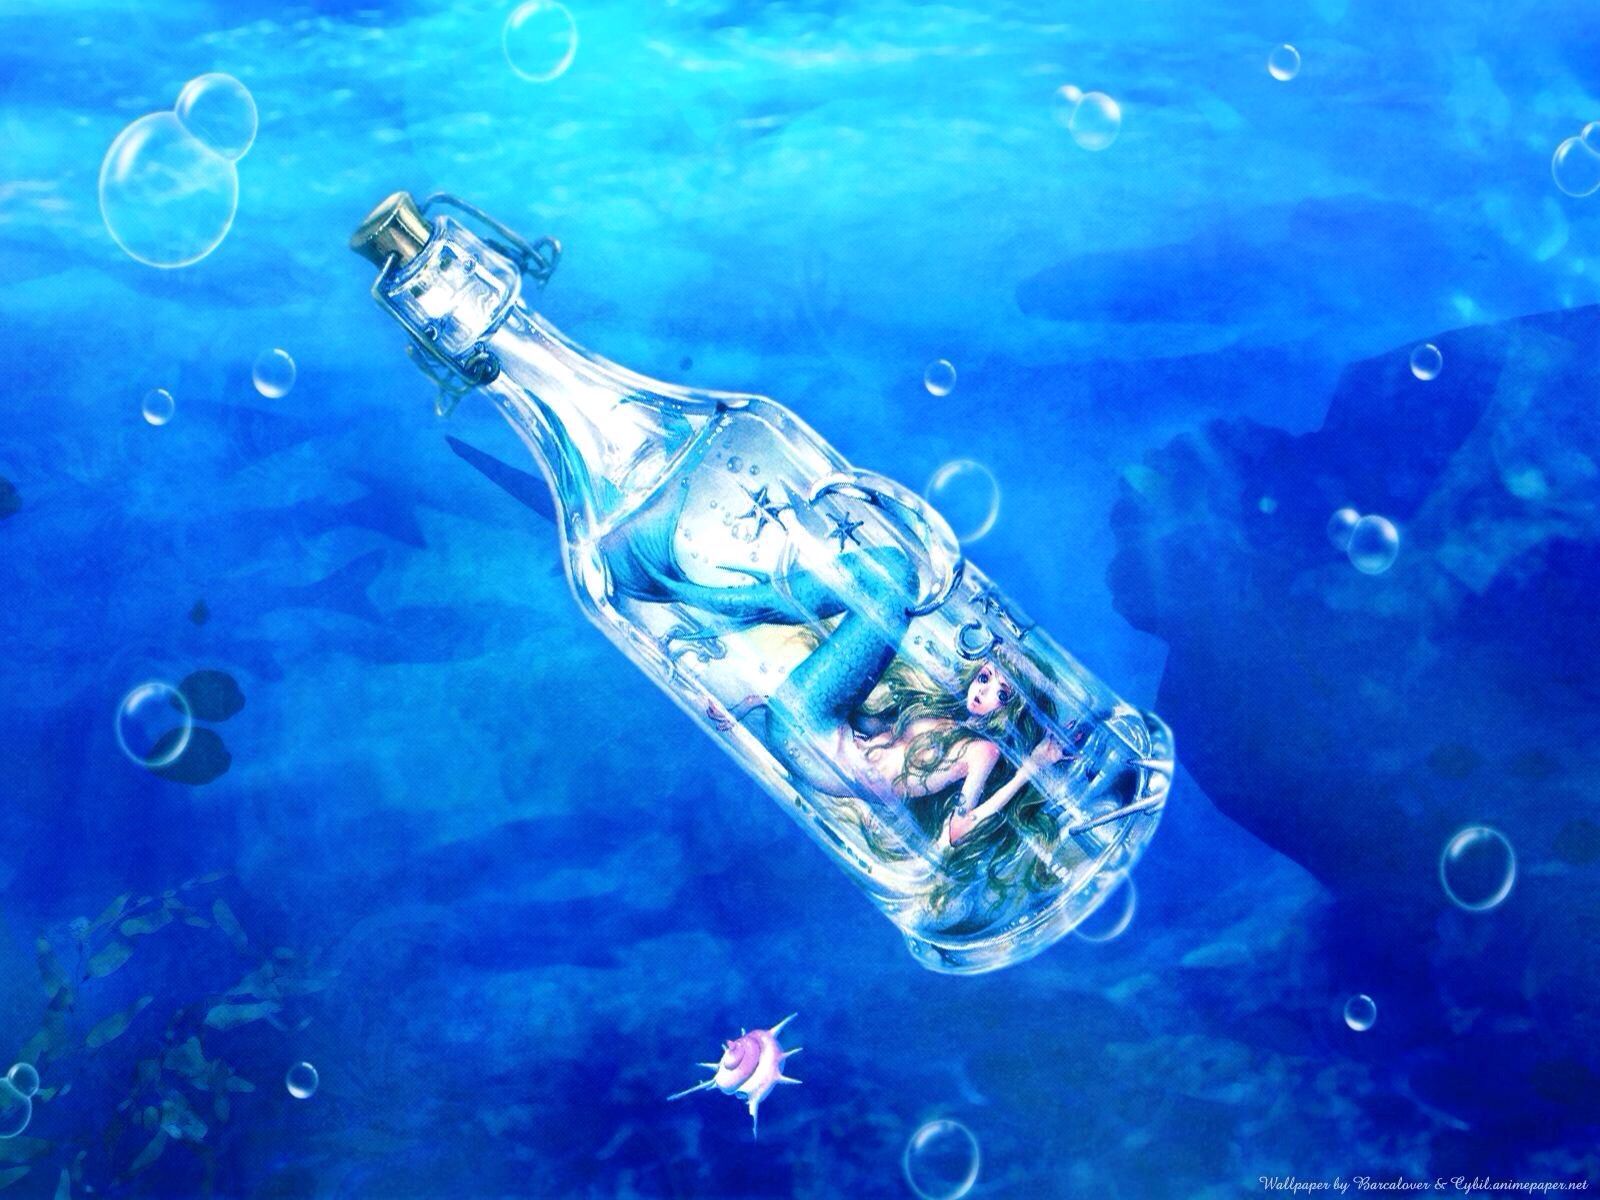 Mermaid inside a bottle underwater & bubbles art. Anime mermaid